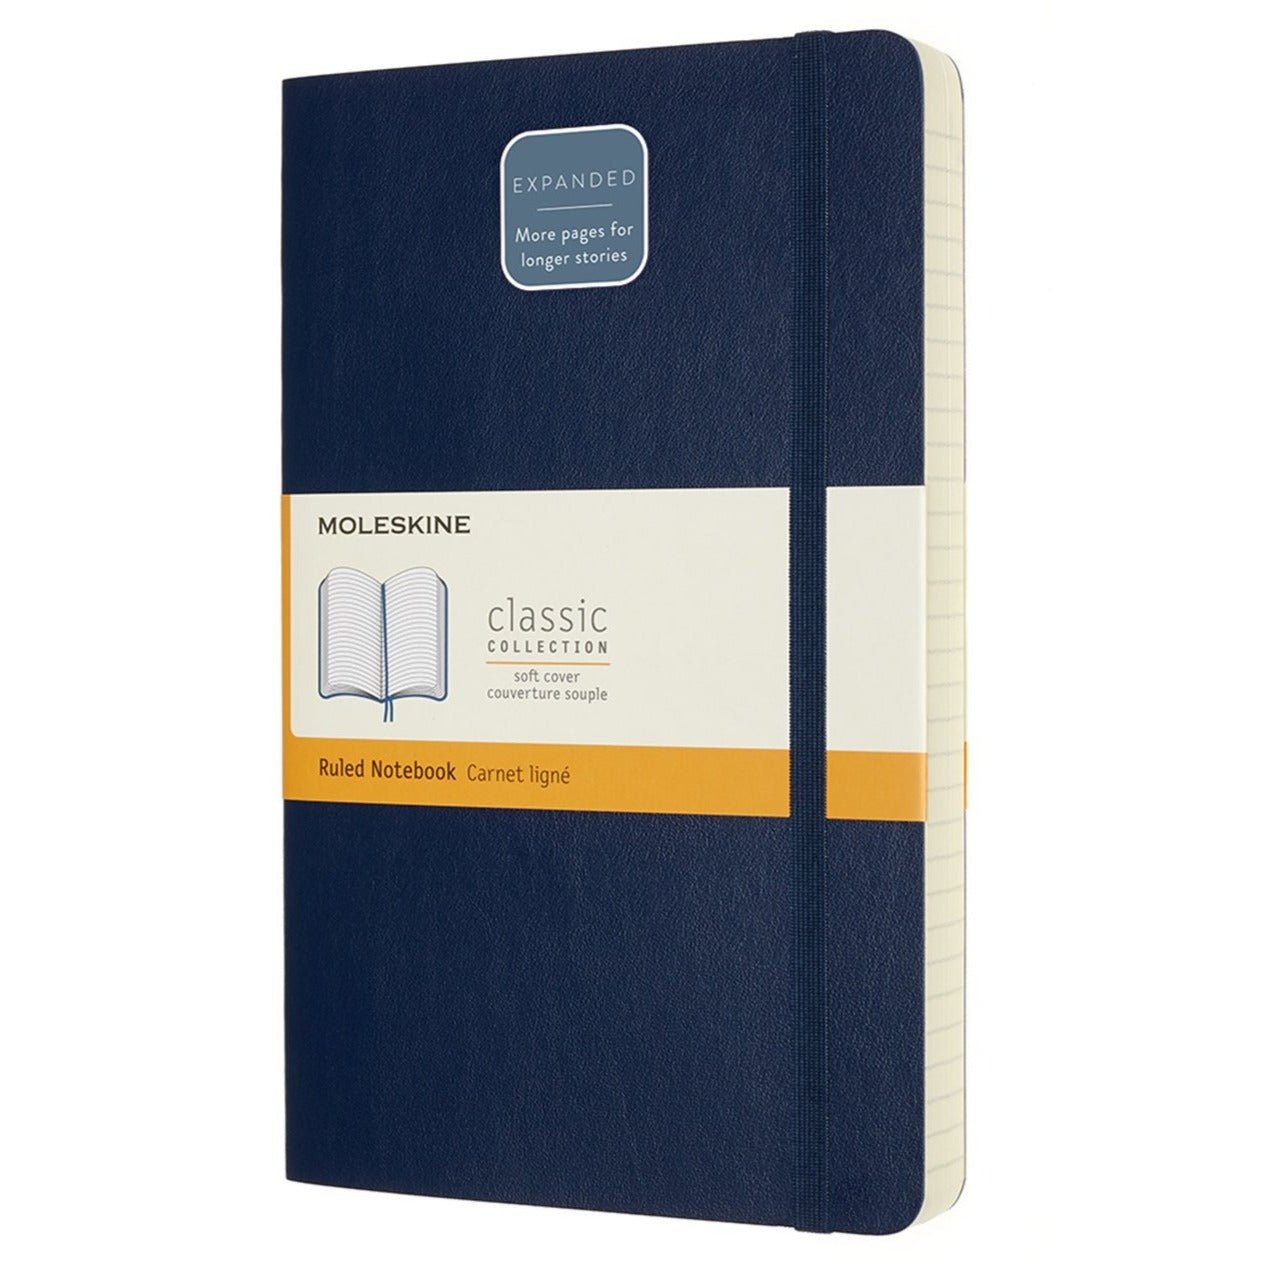 Caderno Soft Expanded (400 páginas) - Azul Safira